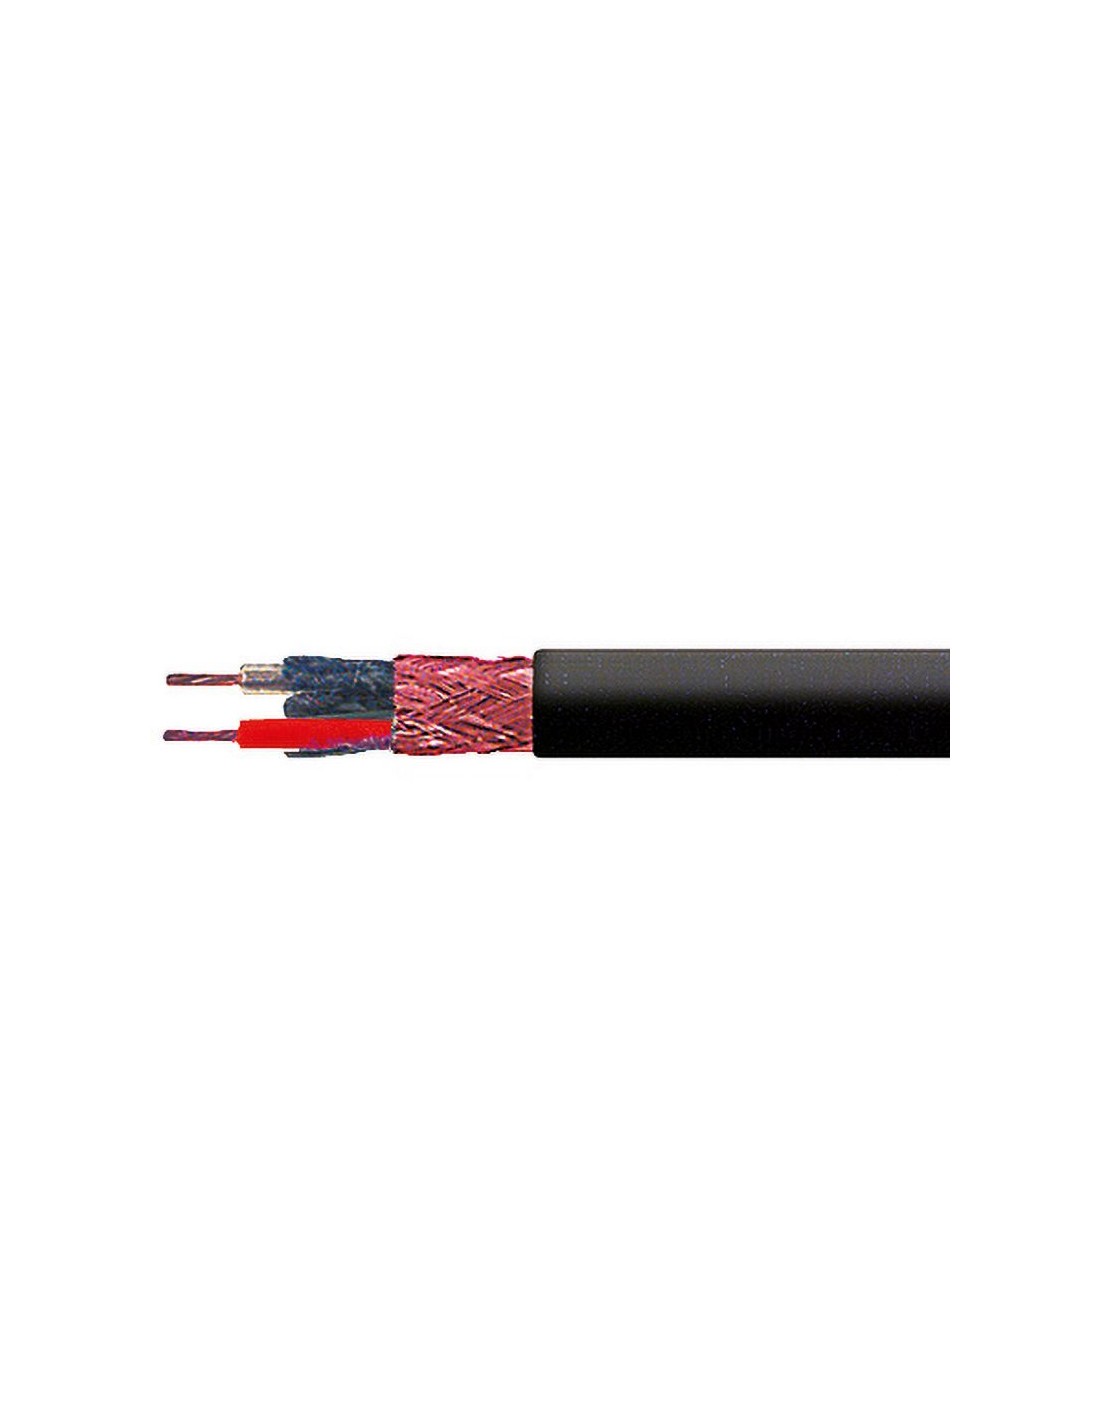 Conjugeren sessie vrijgesteld Afgeschermde kabel 2x0,35 mm2, diameter 6 mm, rode koperen geleider, PVC  mantel, kleur zwart, flexibel